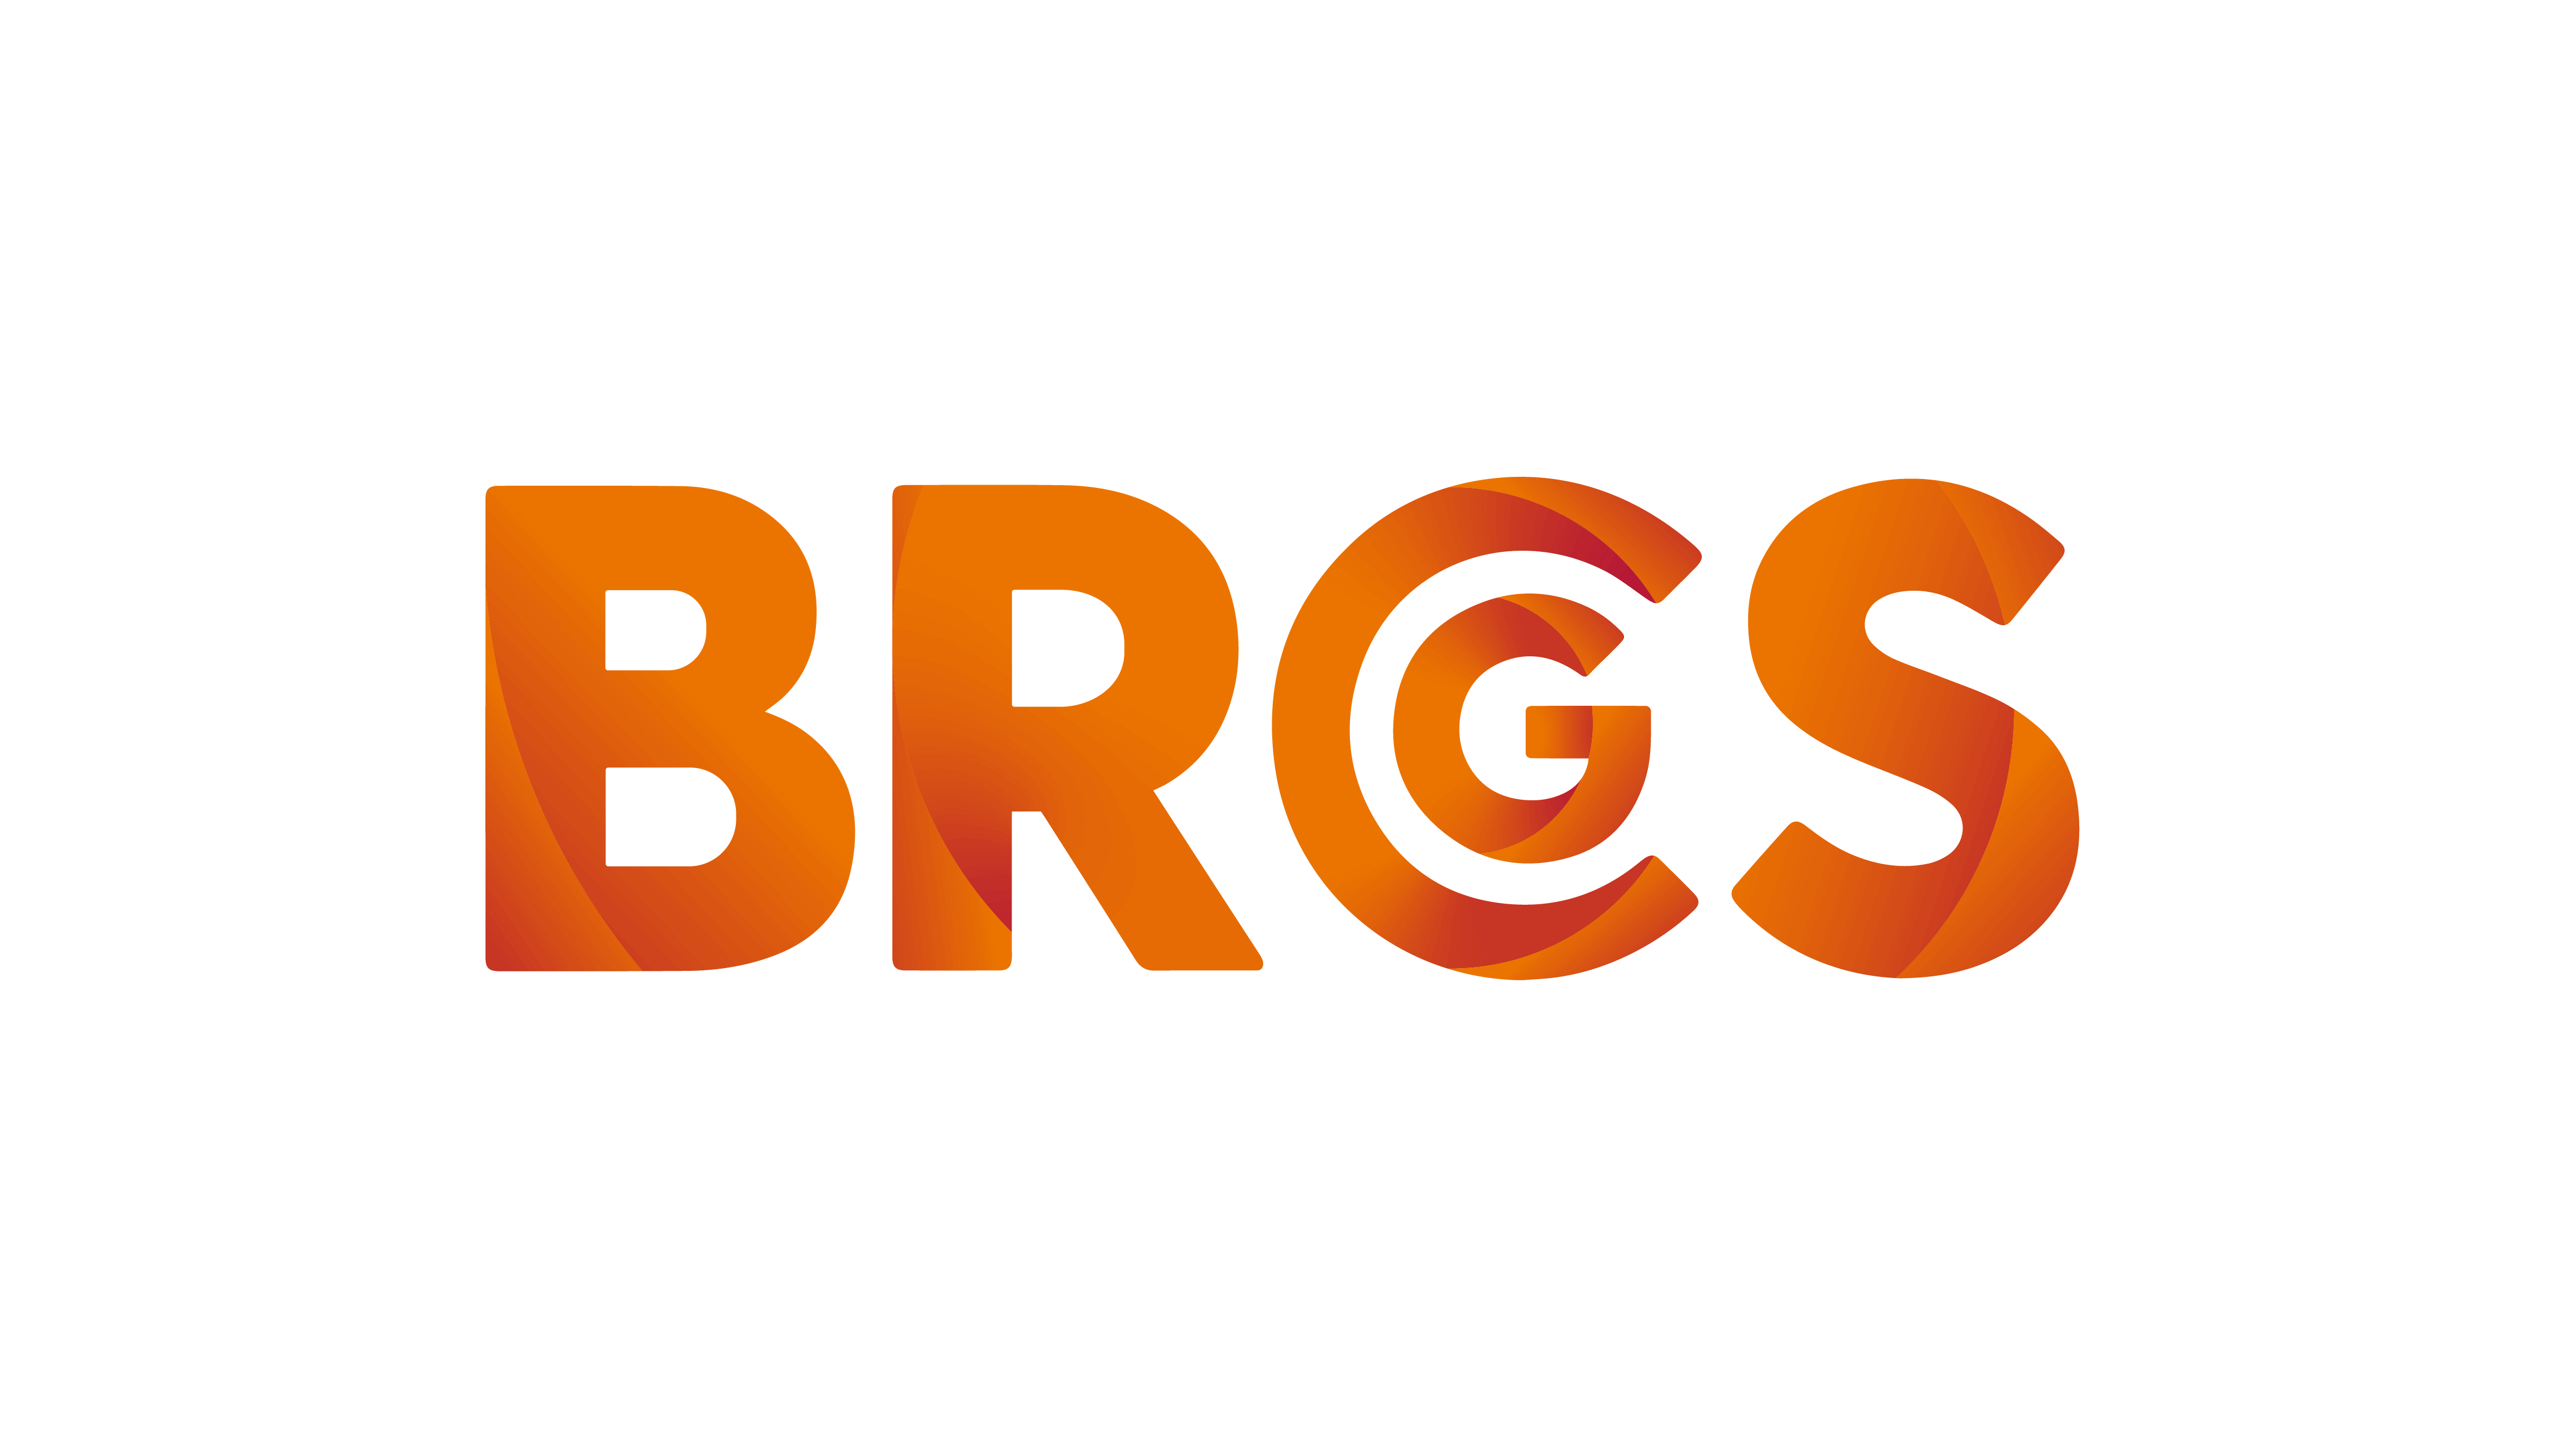 BRCGS